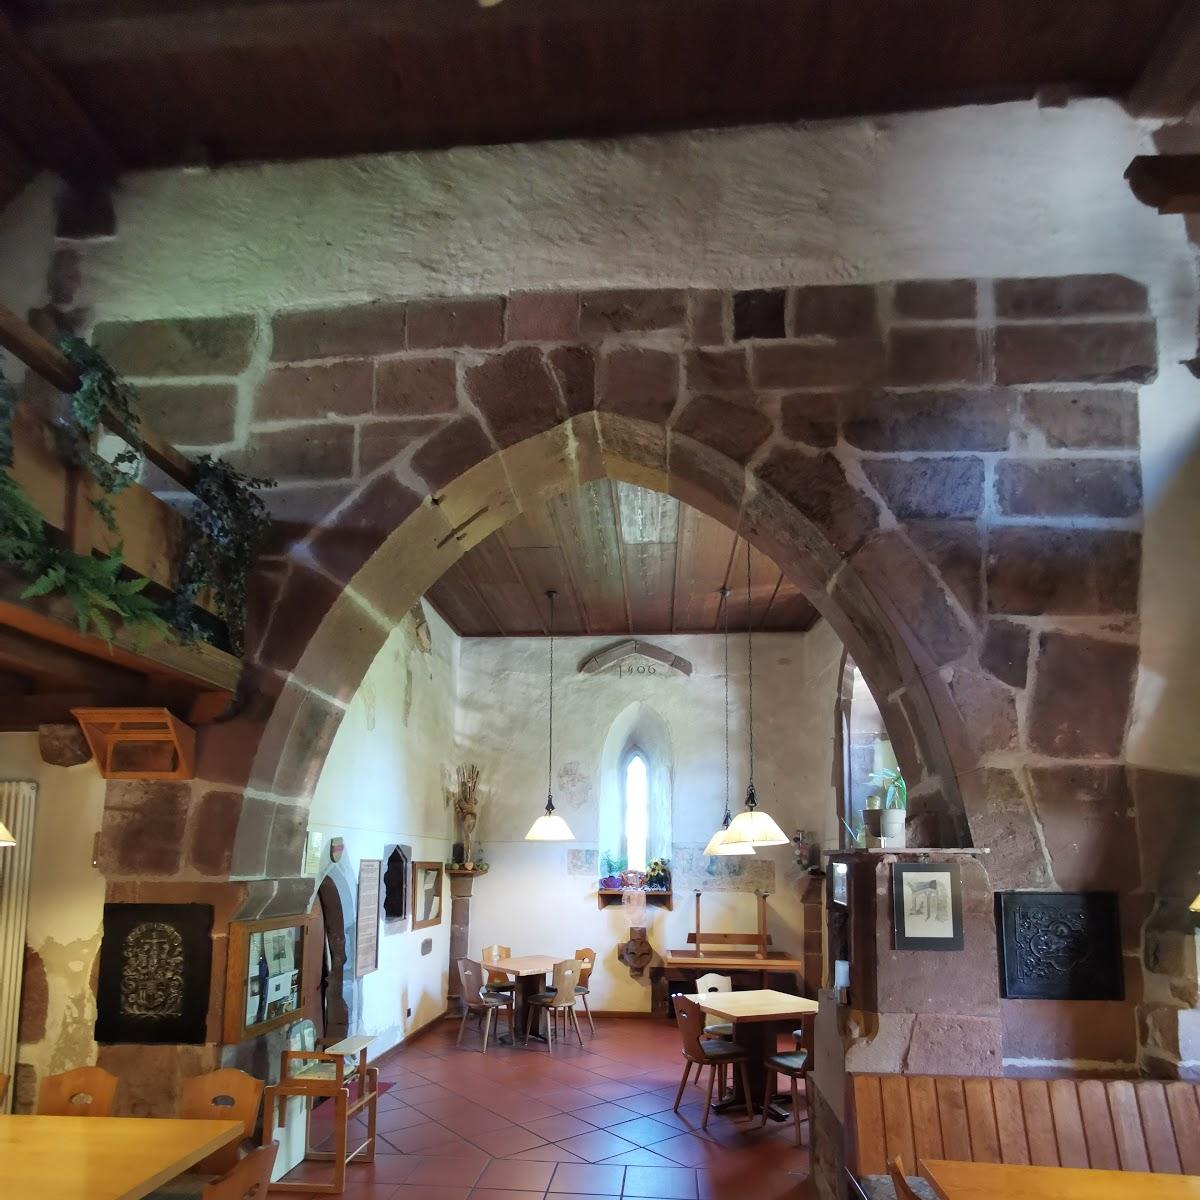 Restaurant "Gasthaus Zur Alten Kirche" in Loßburg